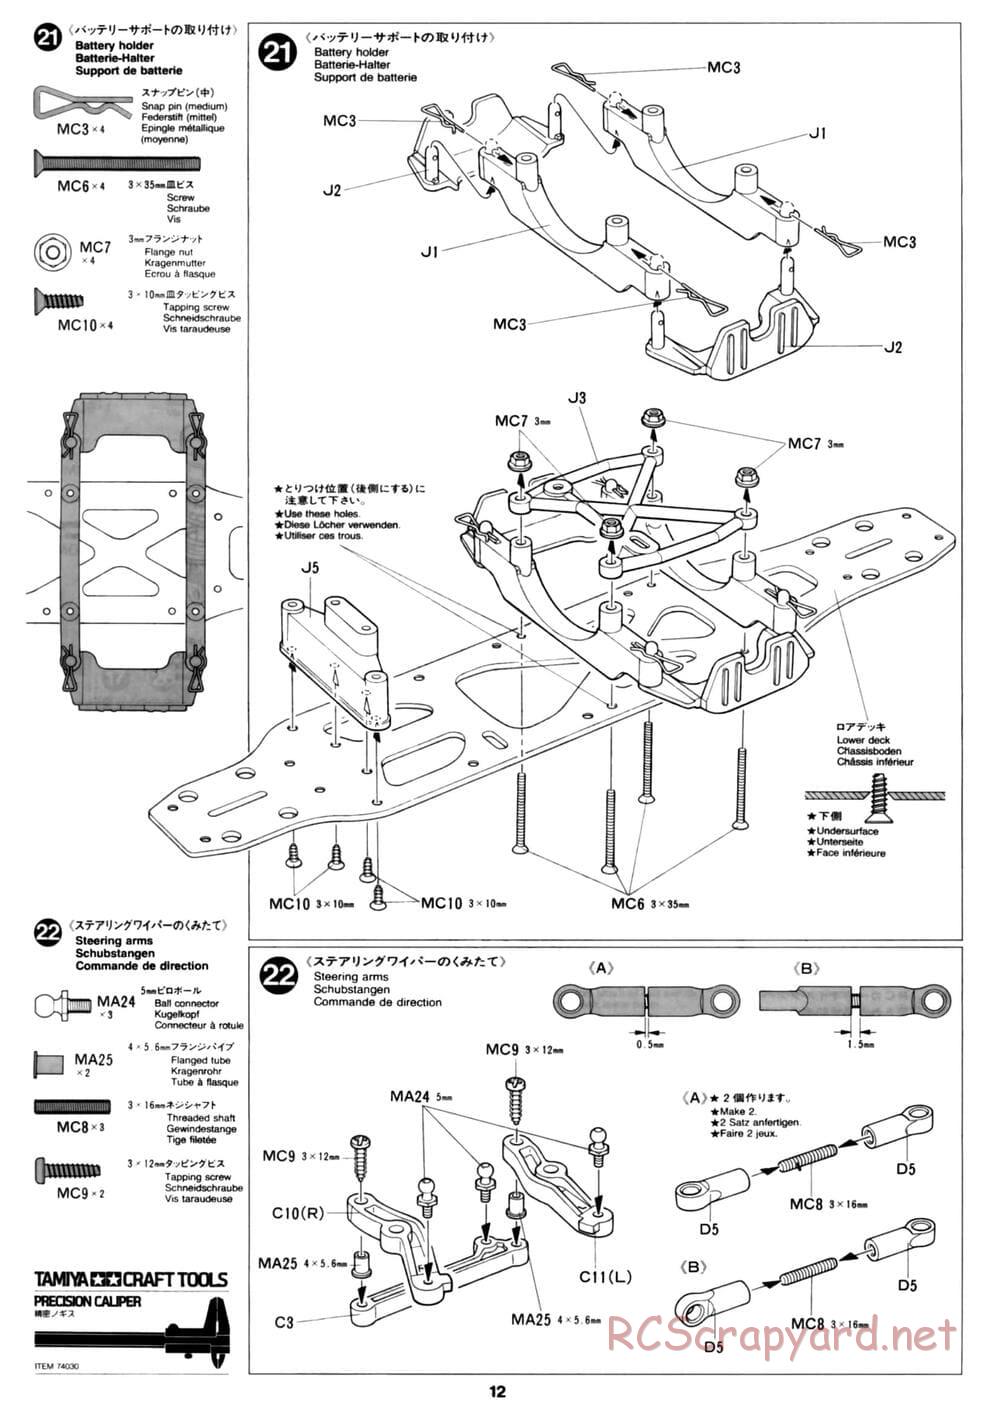 Tamiya - David Jun TA03F Pro Chassis - Manual - Page 12